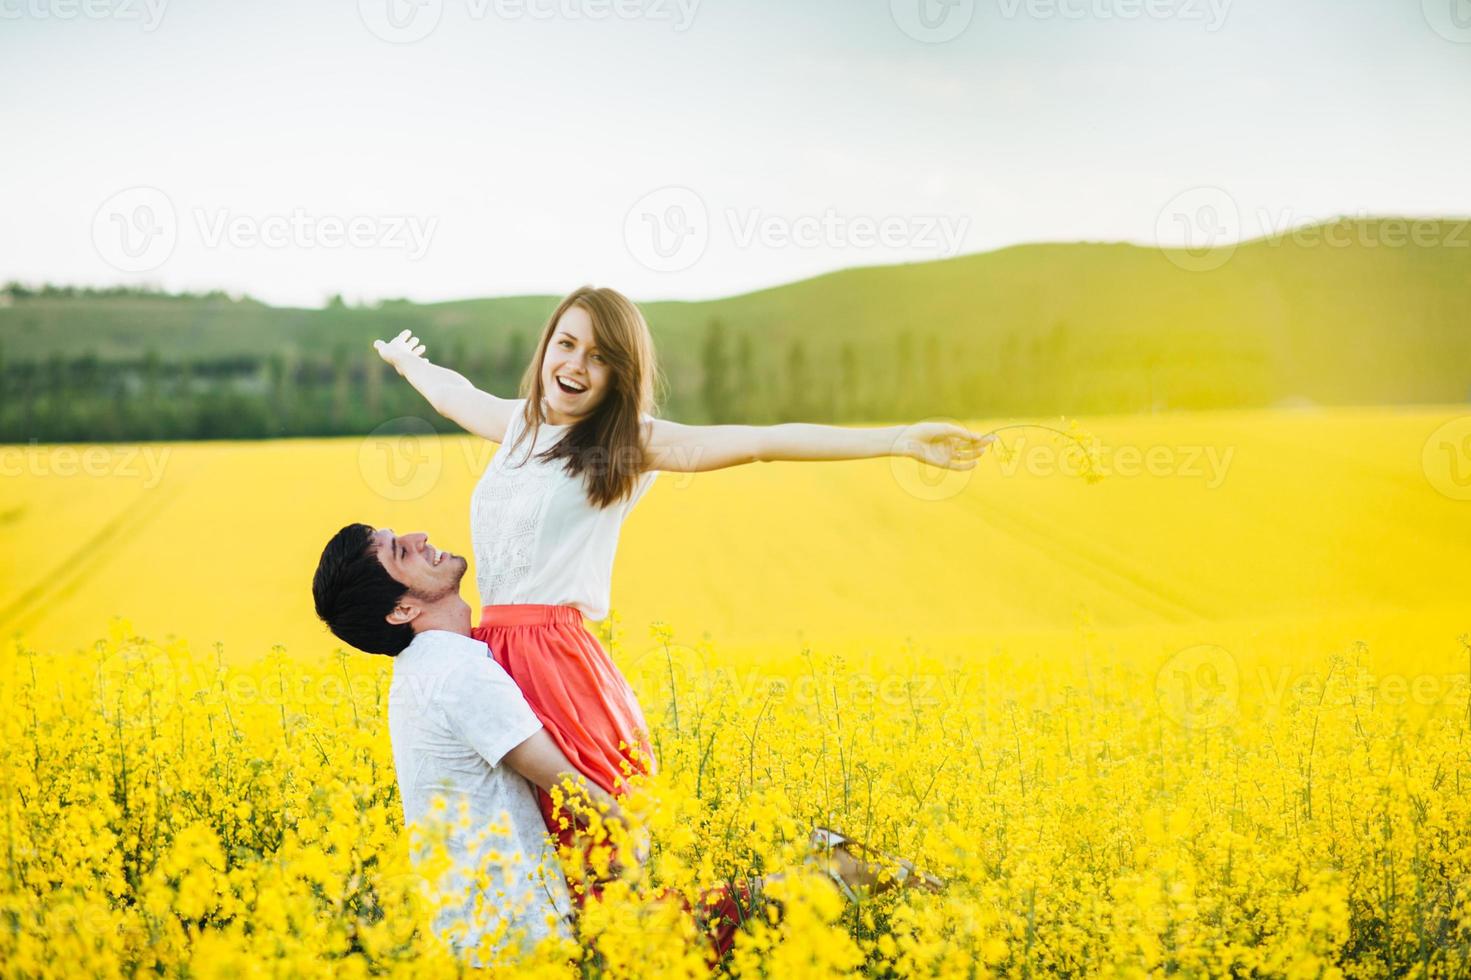 ich fühle mich frei fröhliche junge frau hebt die hände, die auf den händen des mannes liegen, posieren zusammen auf gelbem blumenfeld bei sonnigem sommerwetter. romantisches Paar hat Spaß im Freien. Beziehungskonzept. foto